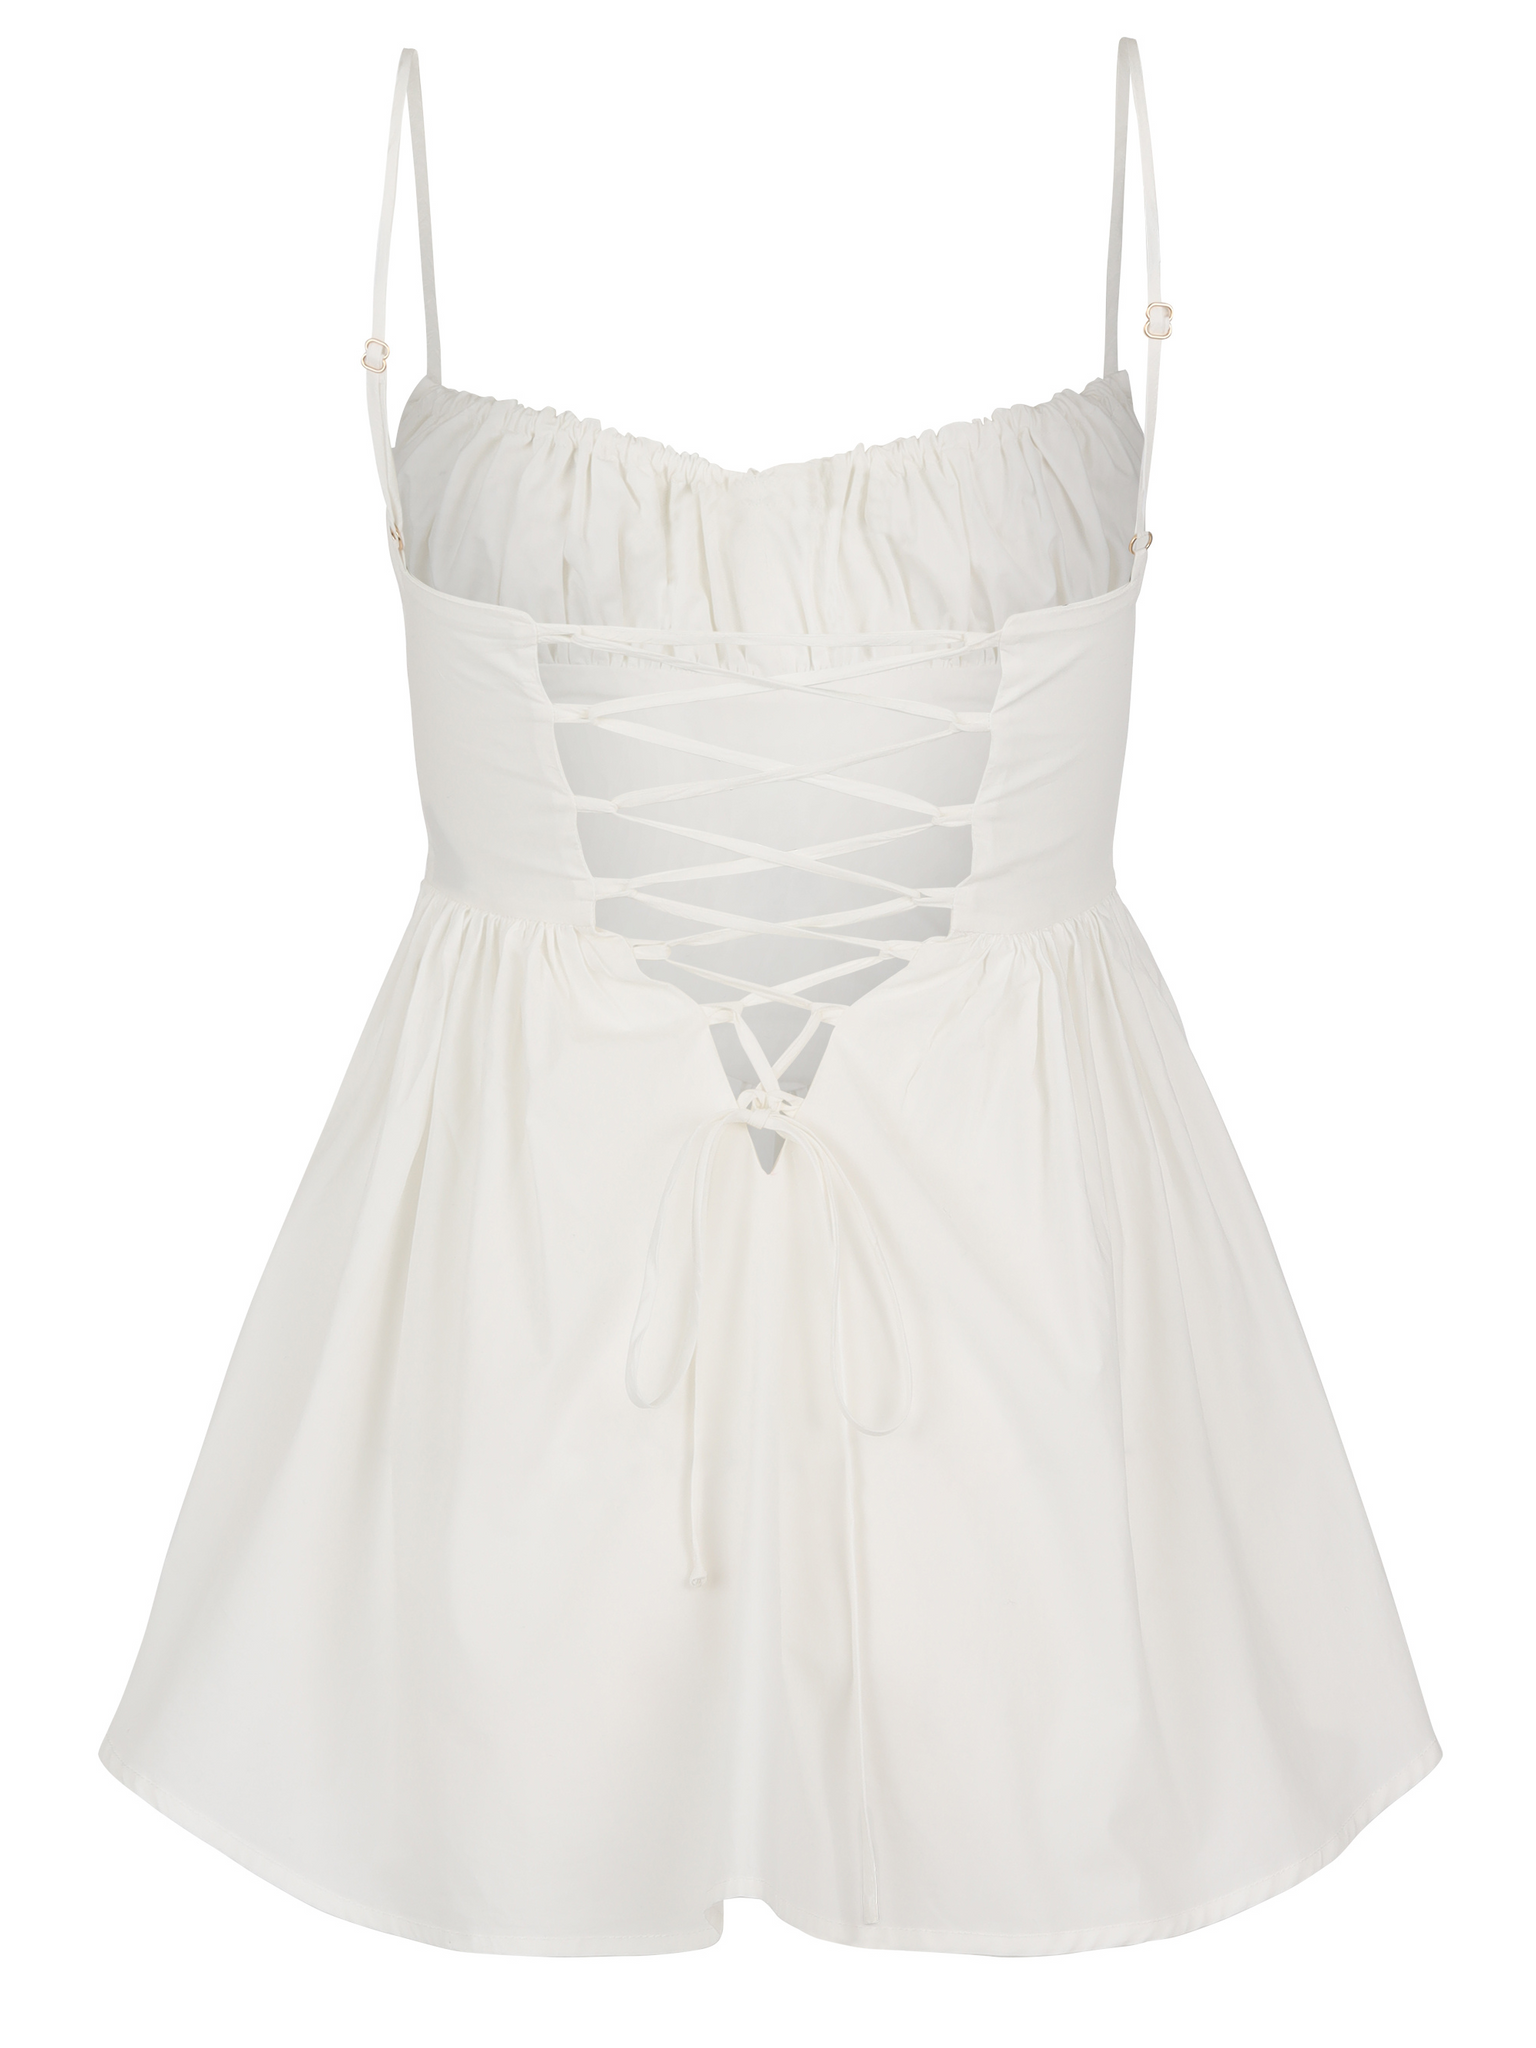 The Ballerina Dress - White